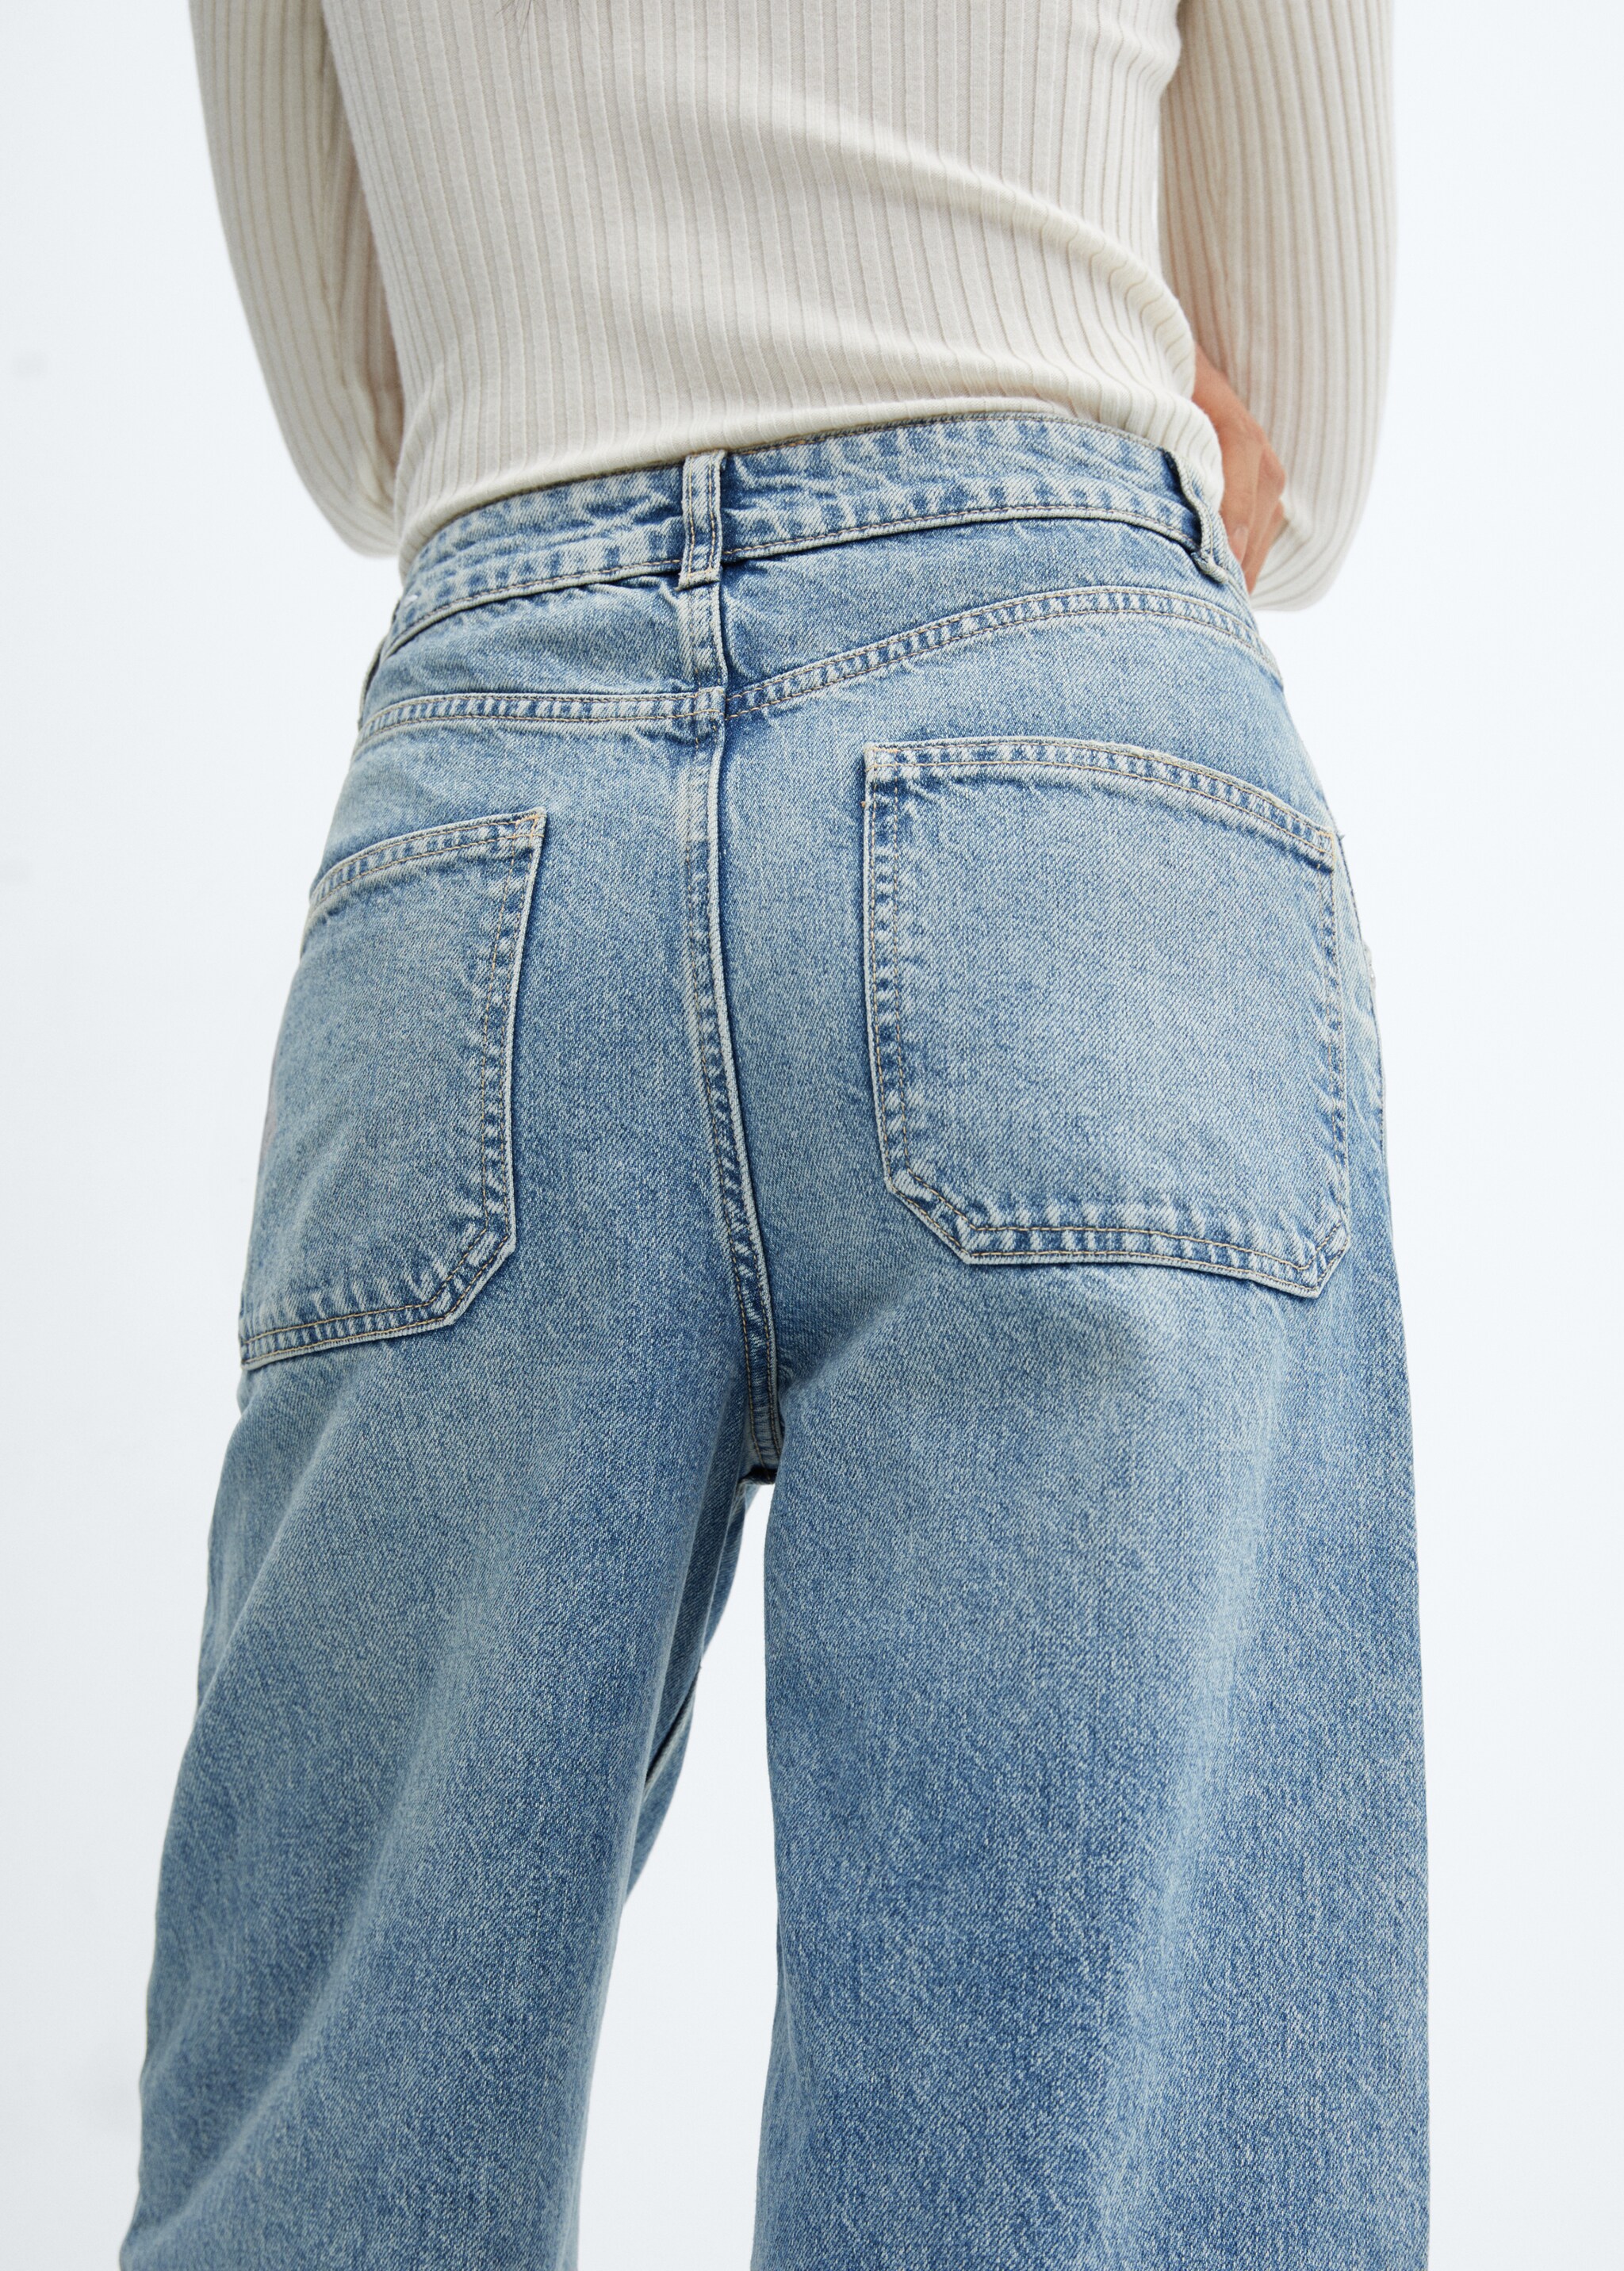 Jeans wideleg tiro medio - Detalle del artículo 6